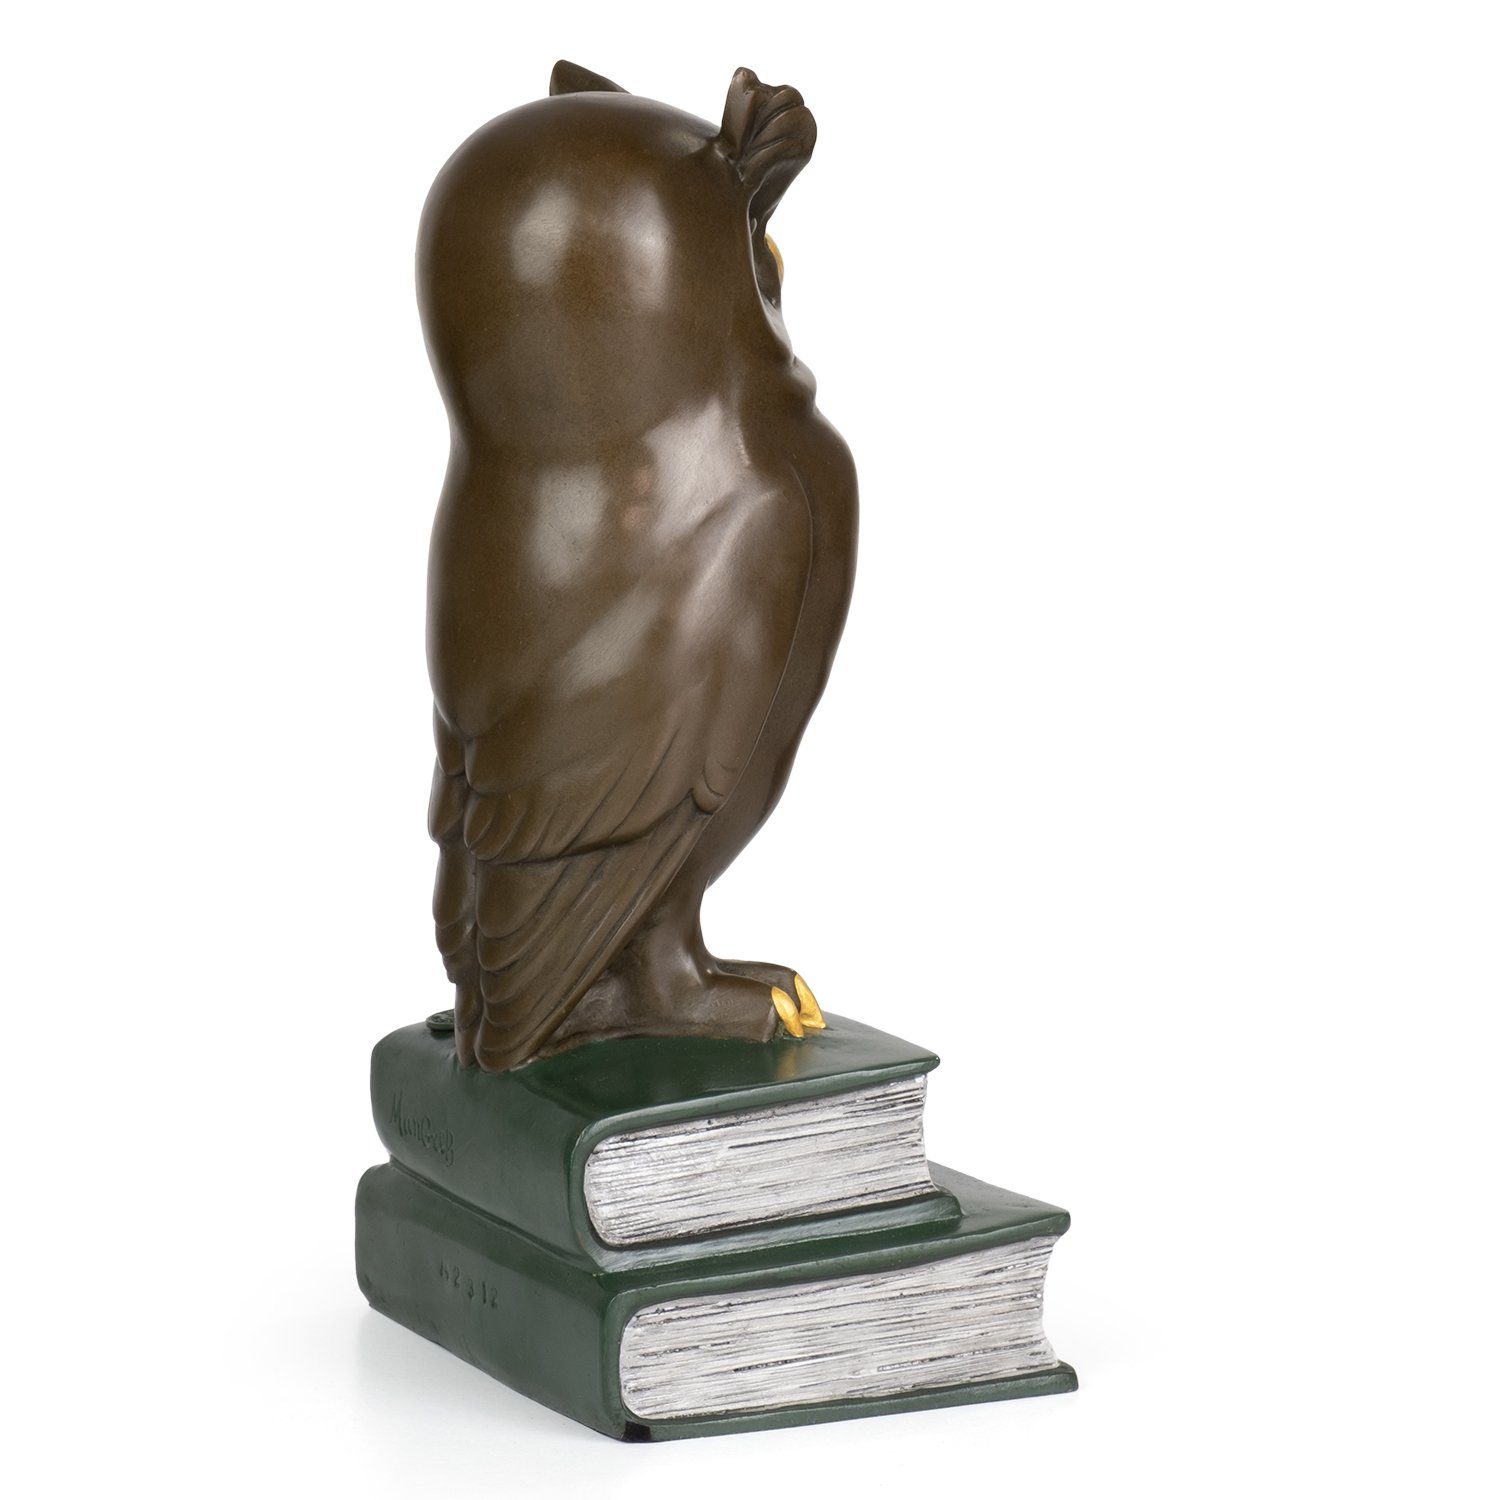 Moritz Skulptur Bronzefigur Eule auf Statue Büchern, Antik-Stil Weise Skulpturen Figuren